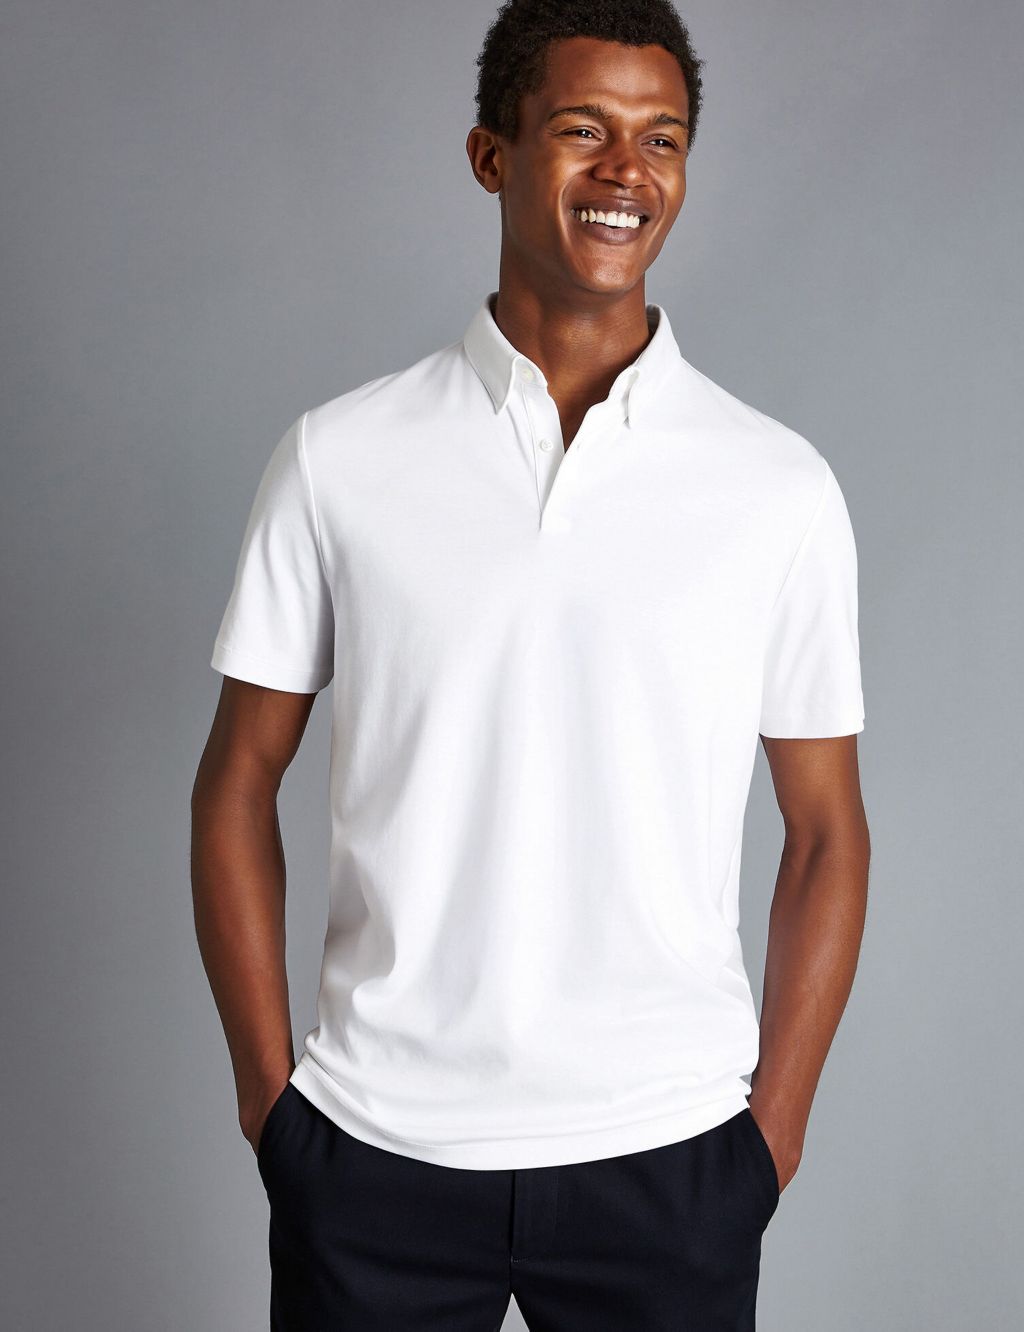 Shop Men’s White Polo Shirts | M&S